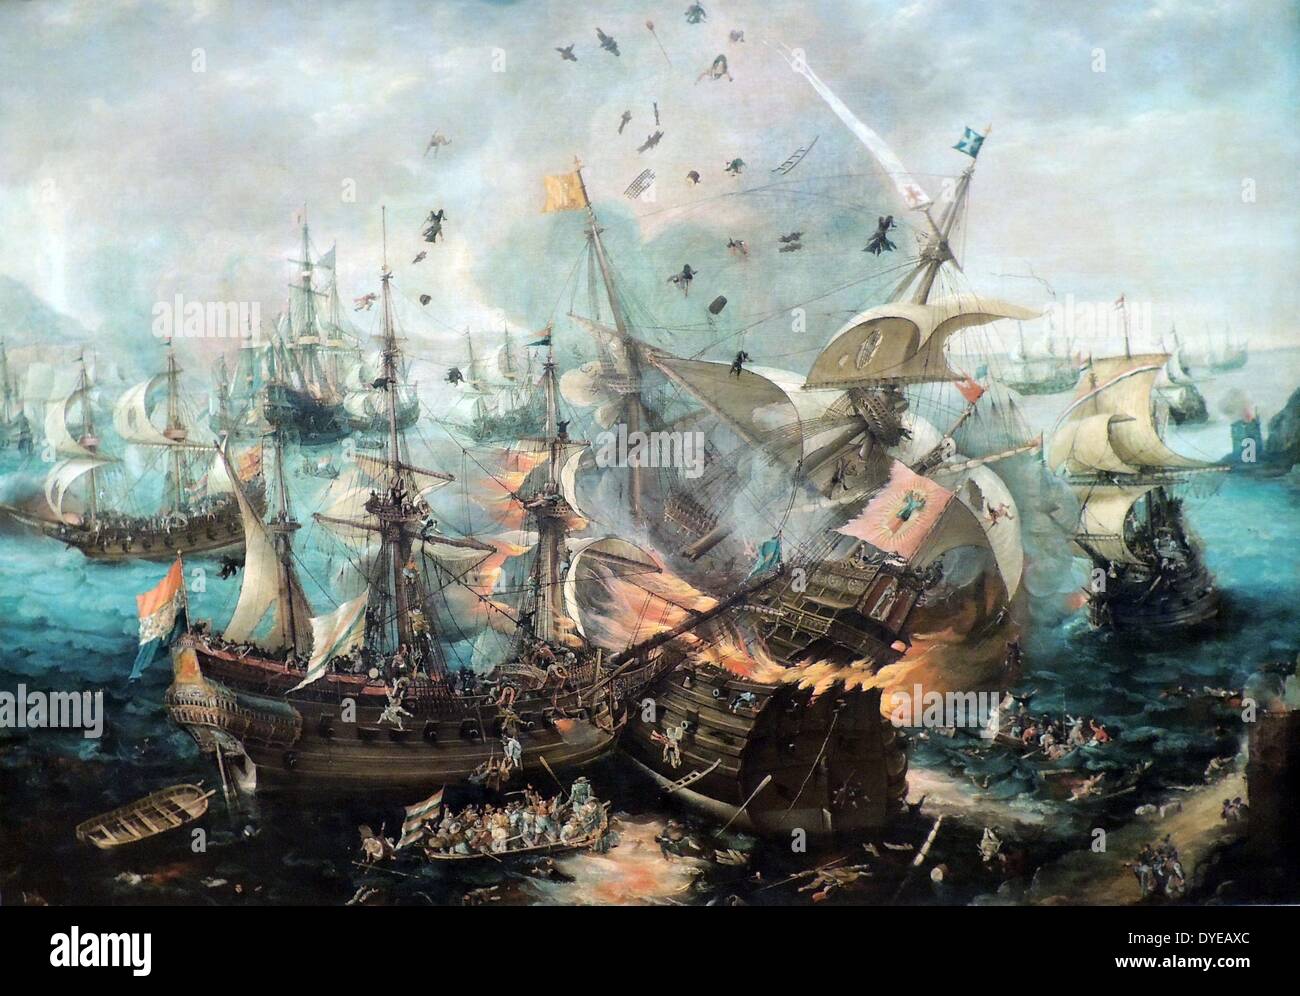 Die Explosion der Spanische Flaggschiff in der Schlacht bei Gibraltar 25. April 1607 von Cornelis Claesz van Wieringen. n 1621 die Admiralität von Amsterdam beschlossen, eine Malerei Kommission zum Gedenken an die Schlacht von Gibraltar, erfolgte im Jahre 1607. Diese Schlacht, in der die niederländischen Geschwader die spanische Flotte in der Bucht von Gibraltar zerstört hatte, war die erste große Niederländische Marine Sieg im 80-jährigen Krieg. Stockfoto